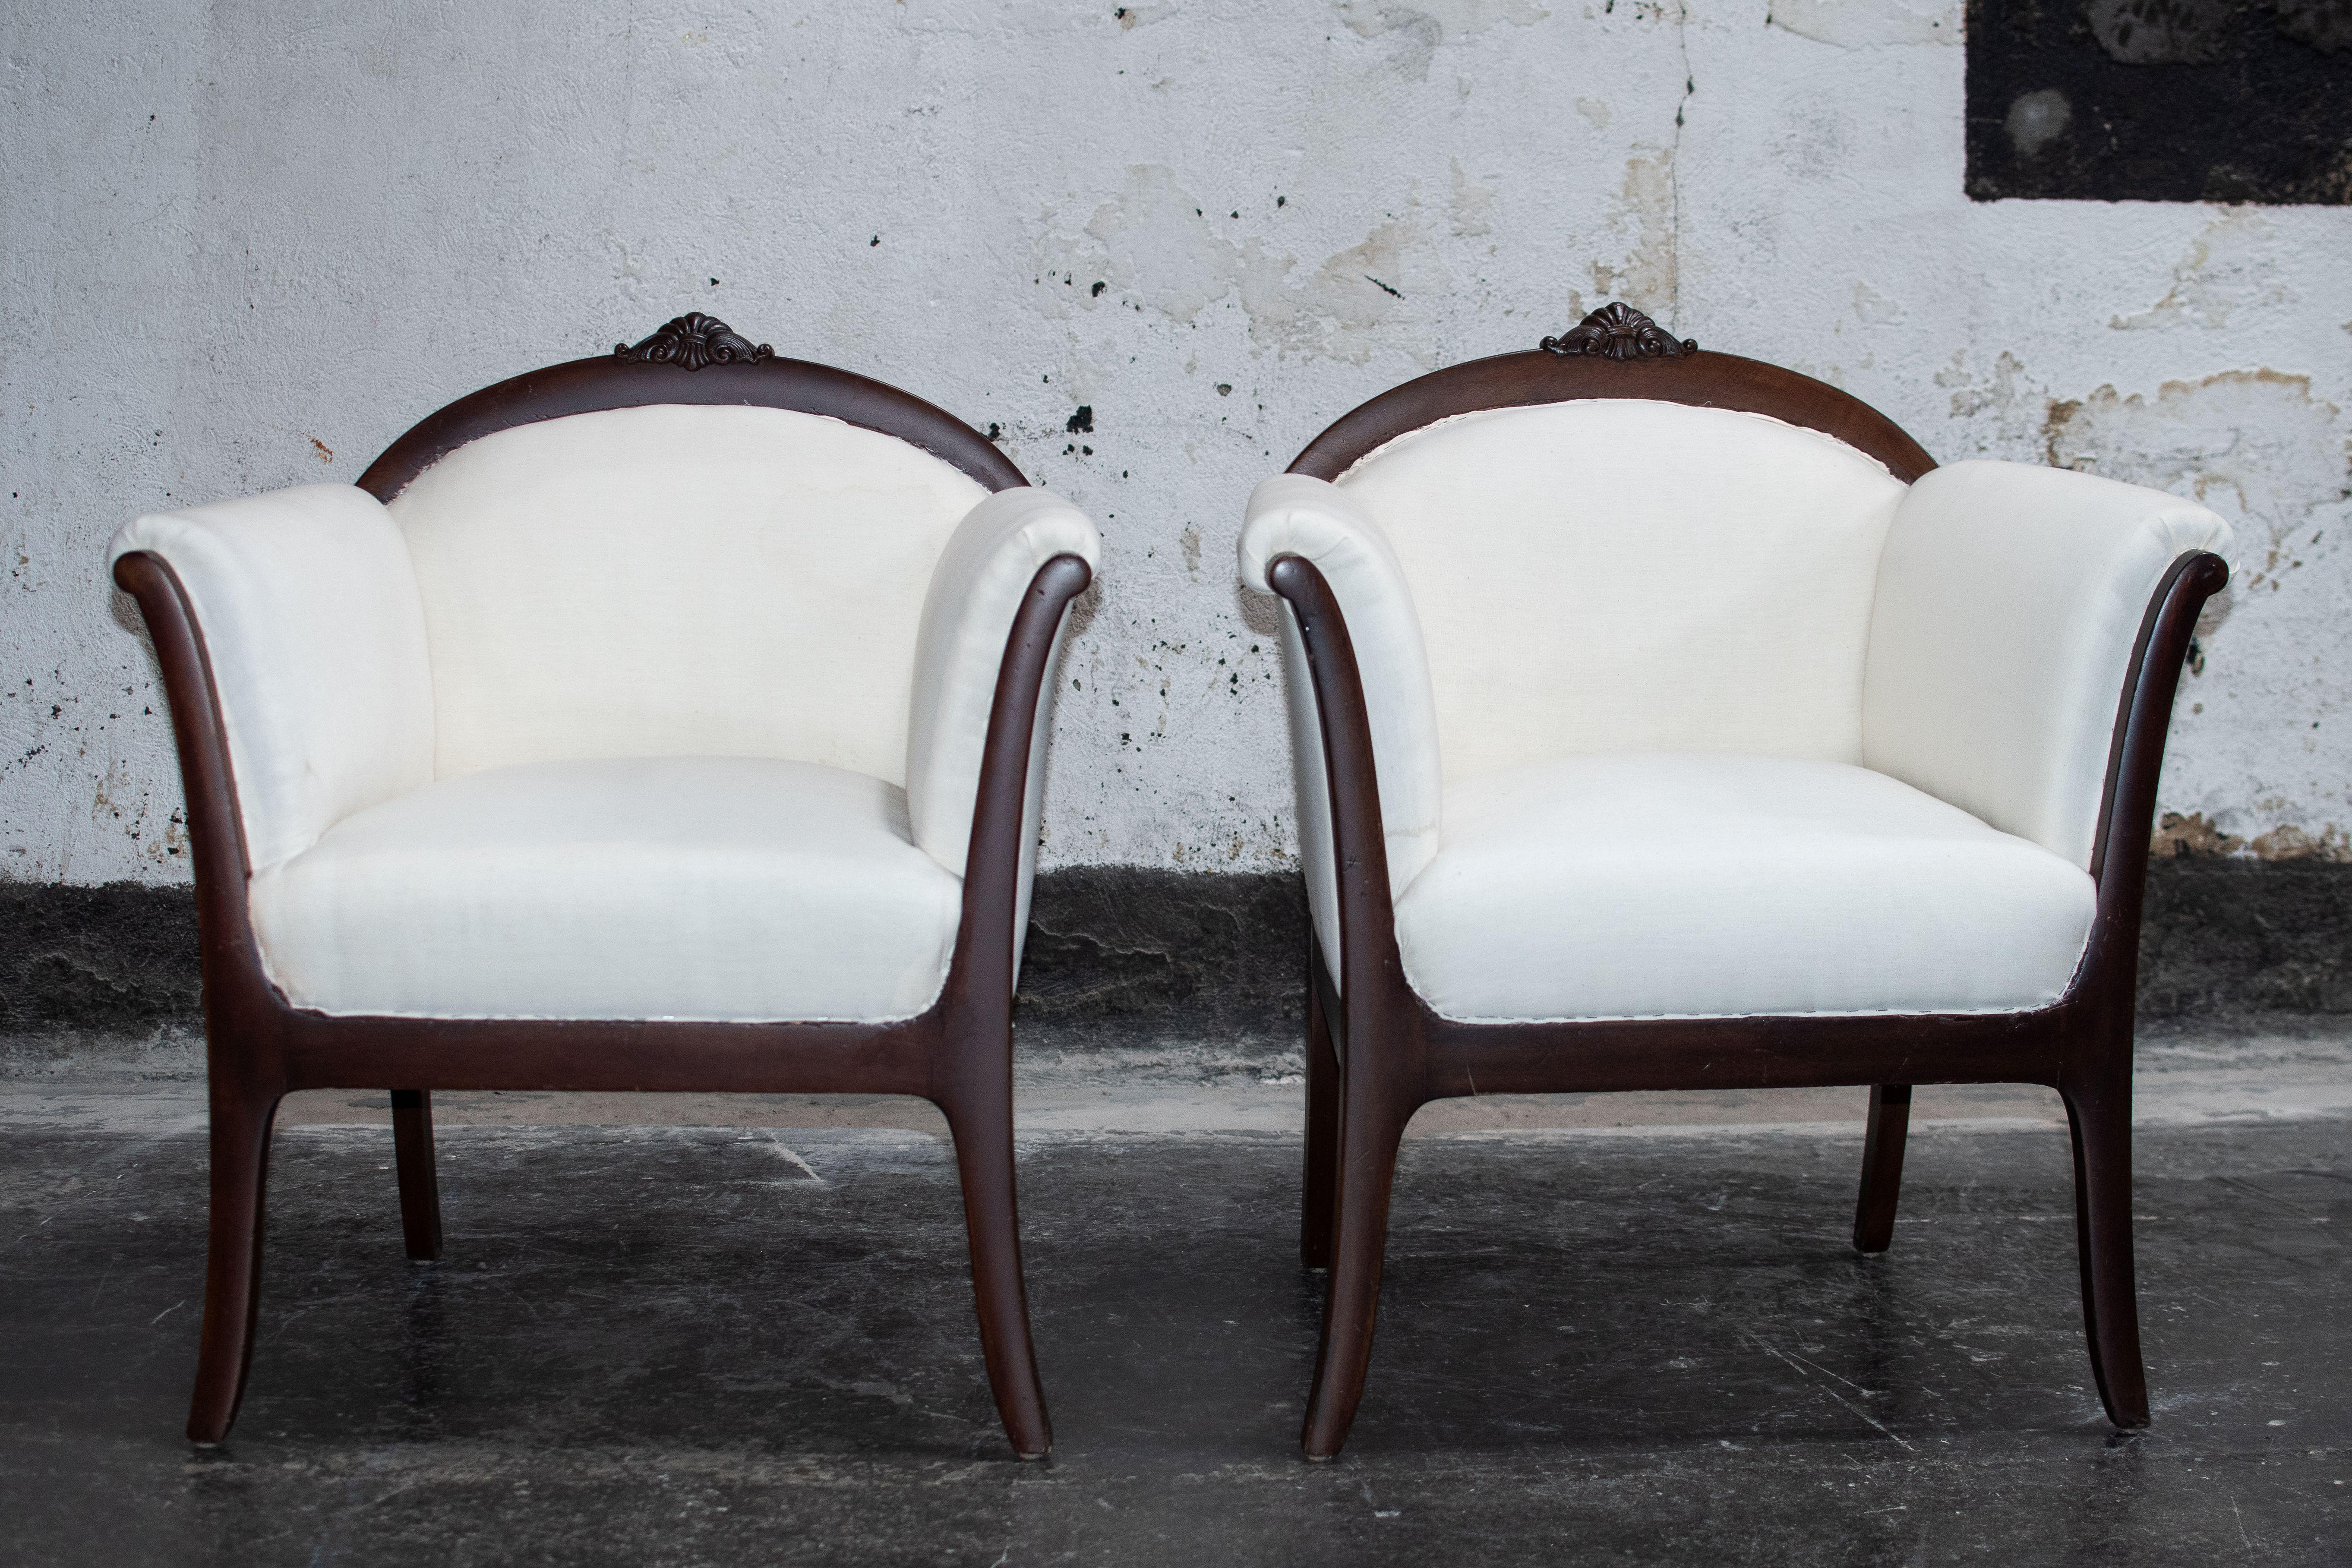 Ein Paar neu restaurierter antiker schwedischer Grace-Sessel. Swedish Grace war die kurze Designperiode, die der bekannteren Scandinavian Modern vorausging. Es handelt sich um eine delikate Mischung aus neoklassischen Elementen und Techniken,